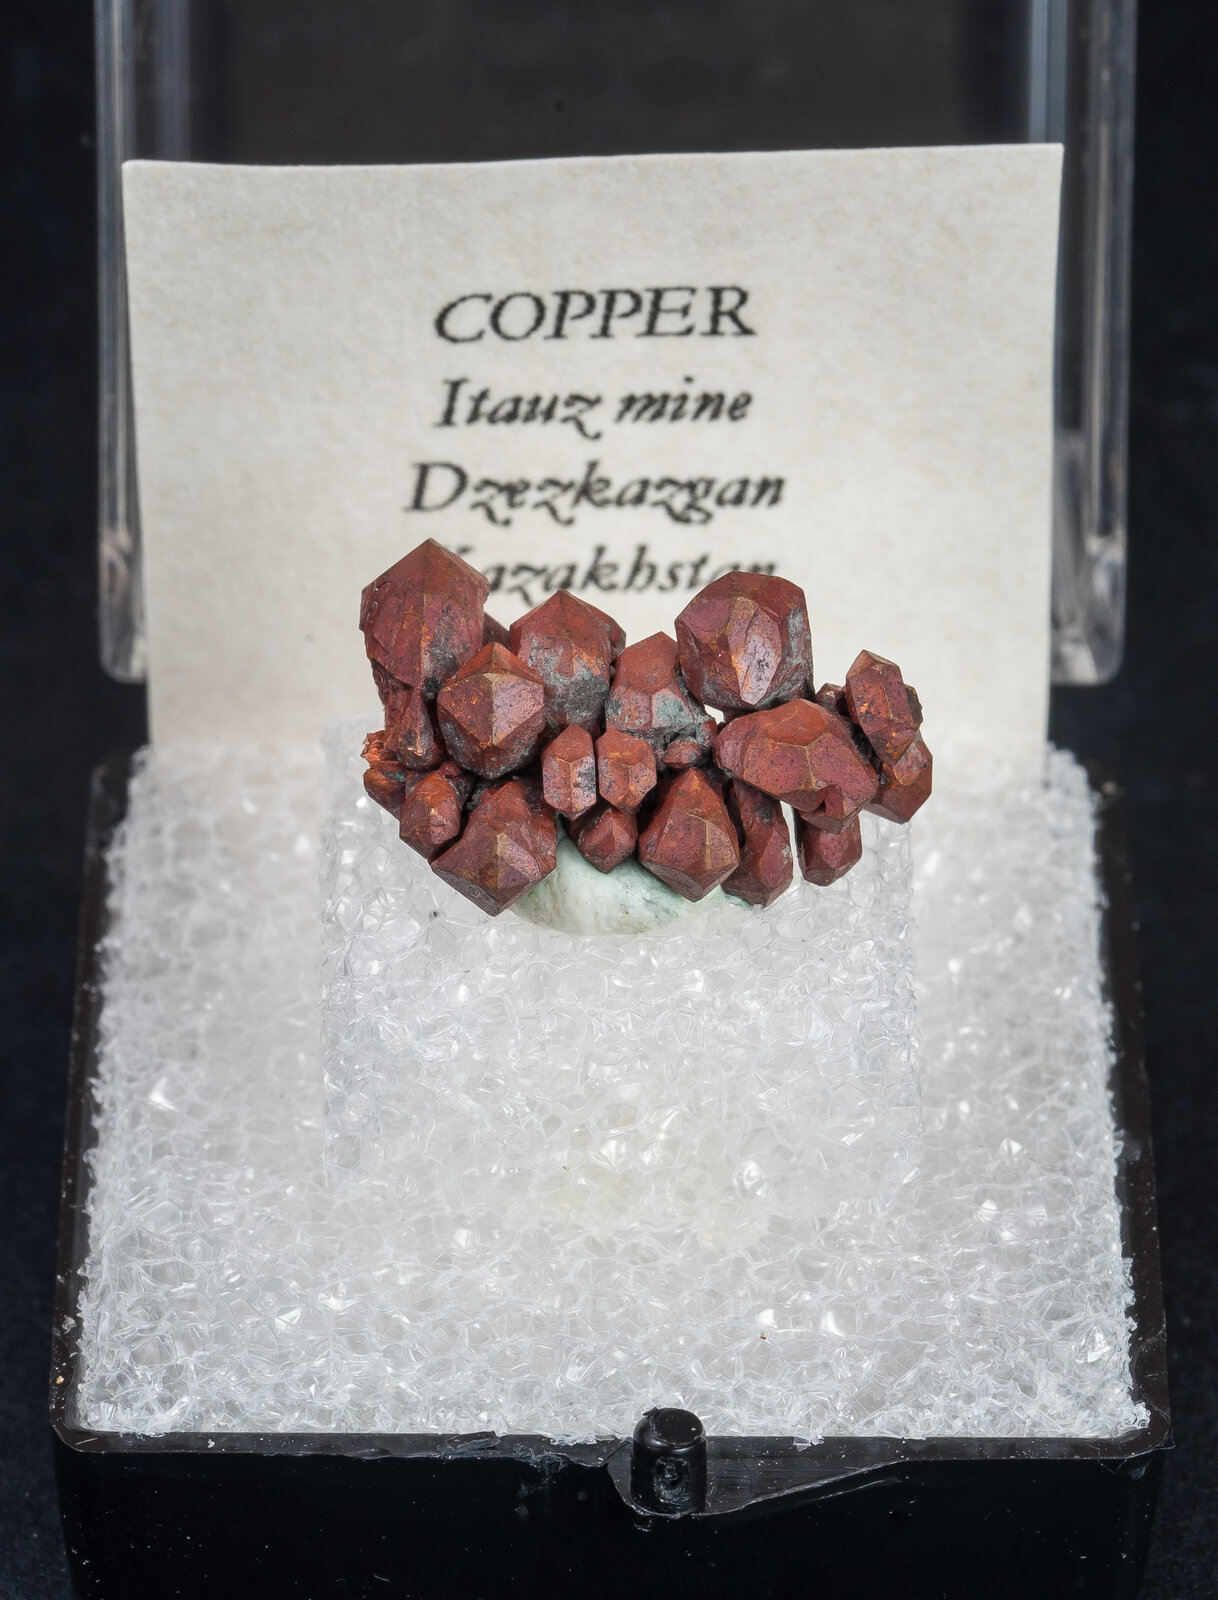 specimens/s_imagesAN3/Copper-TRN46AN3f.jpg